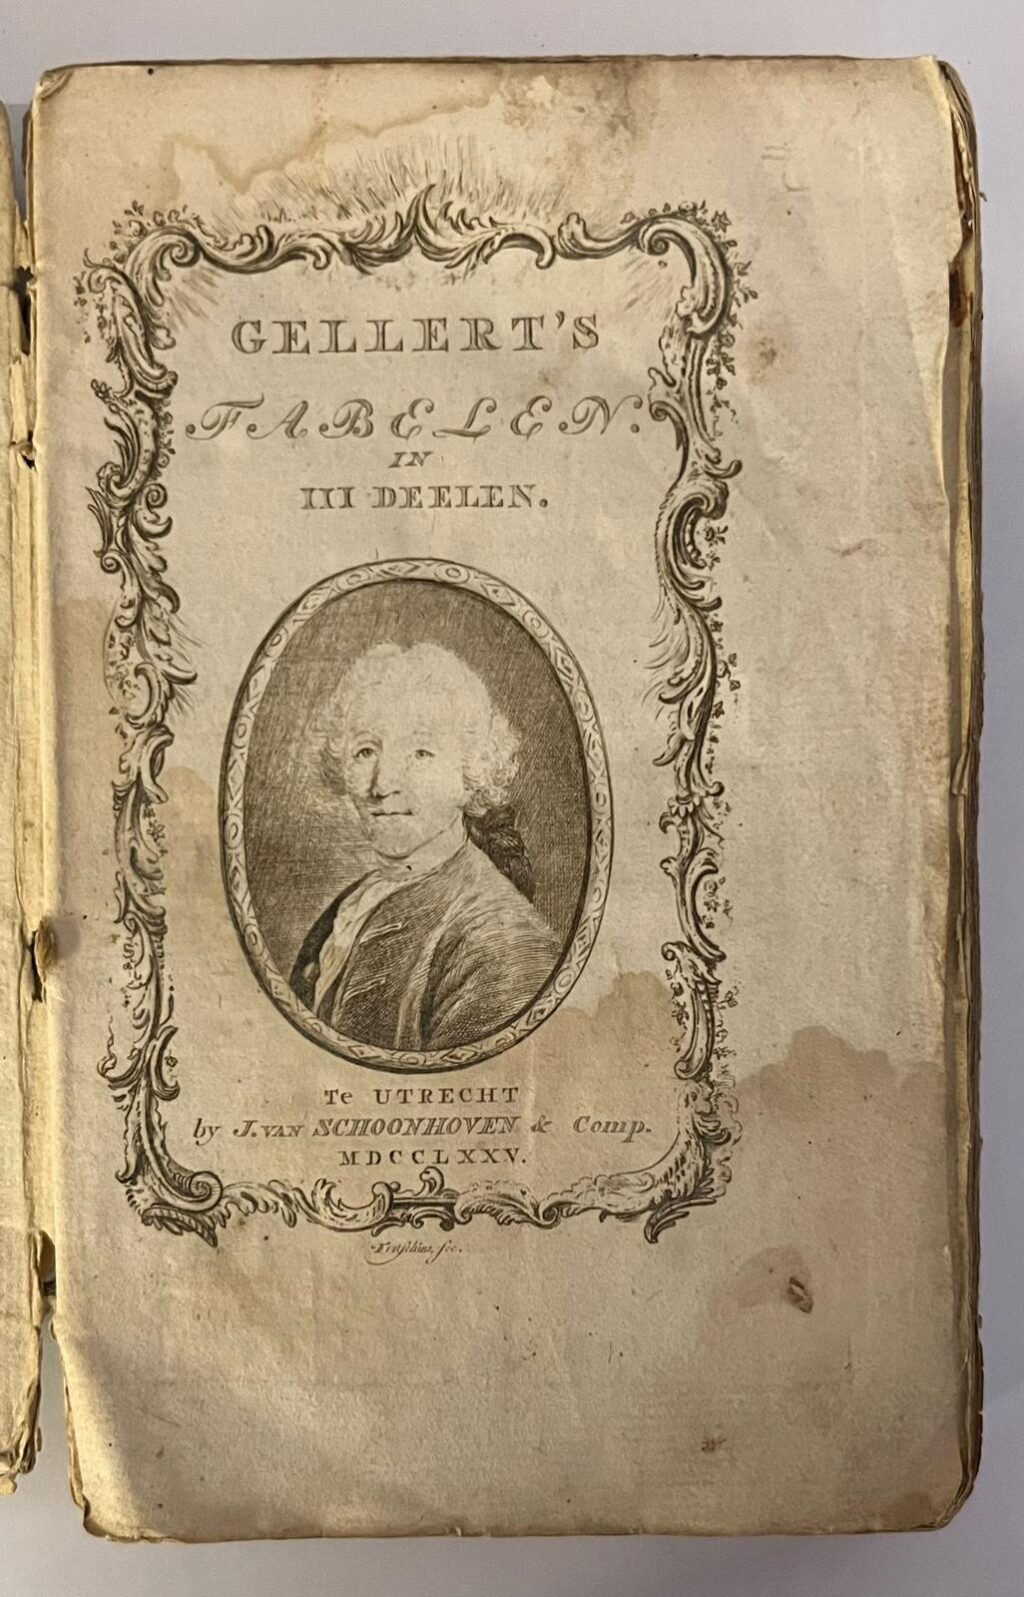 Fabelen. Utrecht, J. van Schoonhoven & Comp., 1775. [3 delen in 1 band met doorlopende paginering]